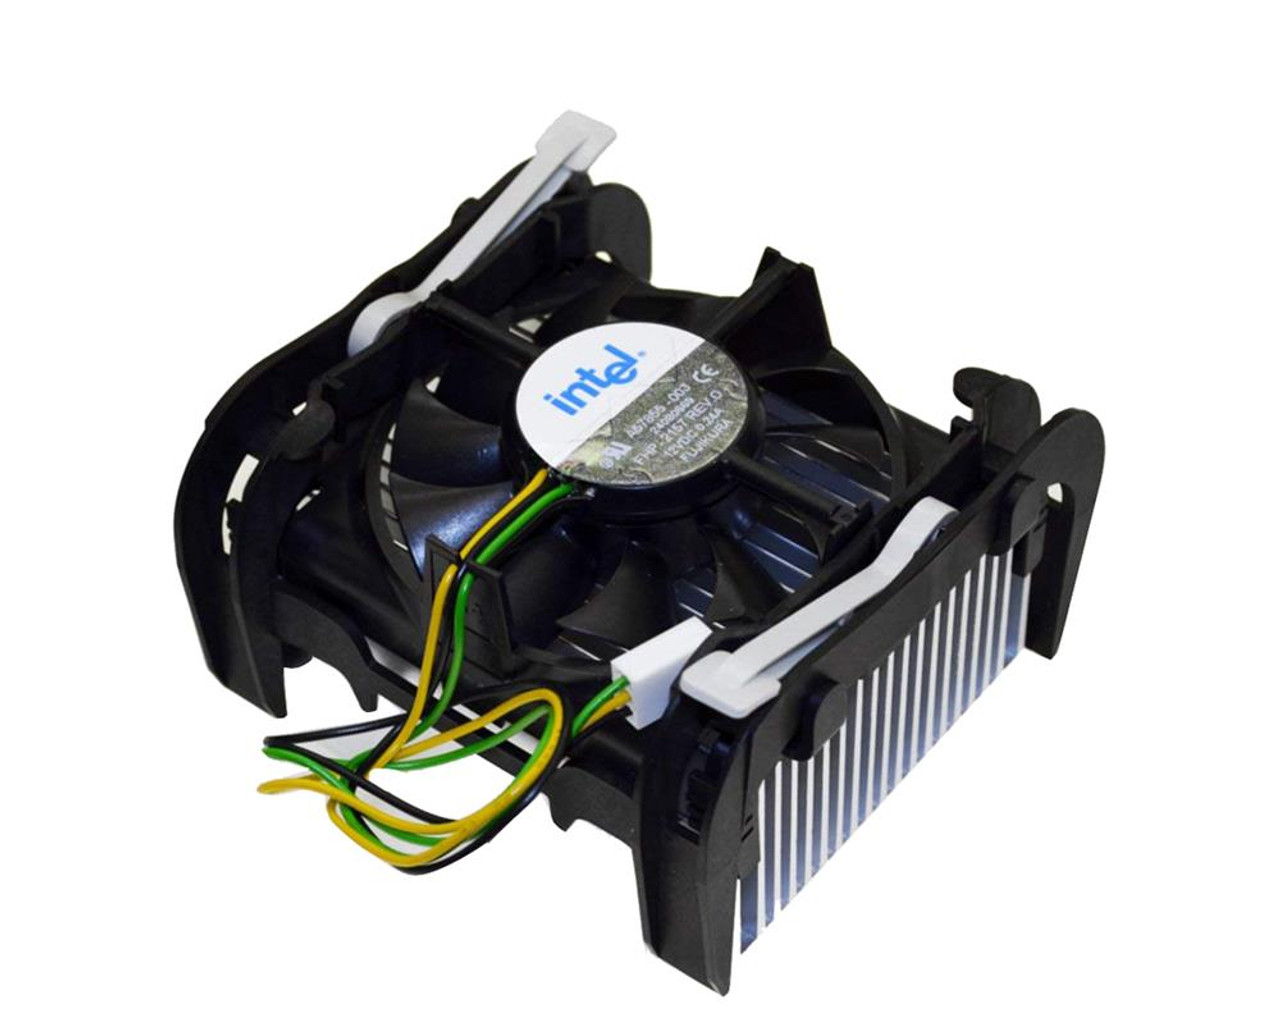 A57855-003 Intel Socket 478 Fan and Heatsink